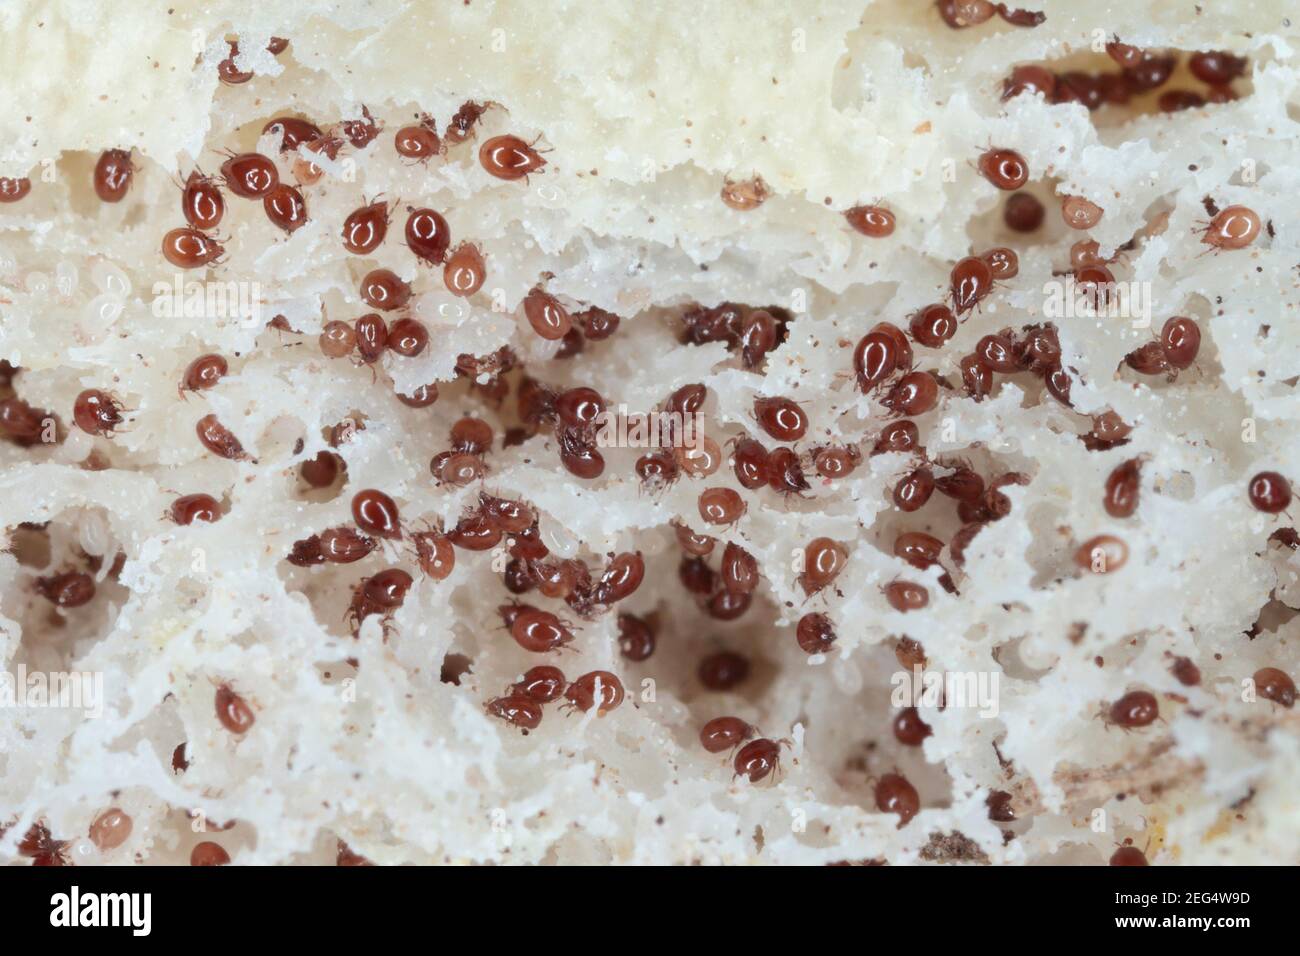 Grossissement des acariens de la famille des acaridae sur du pain moldy. Banque D'Images